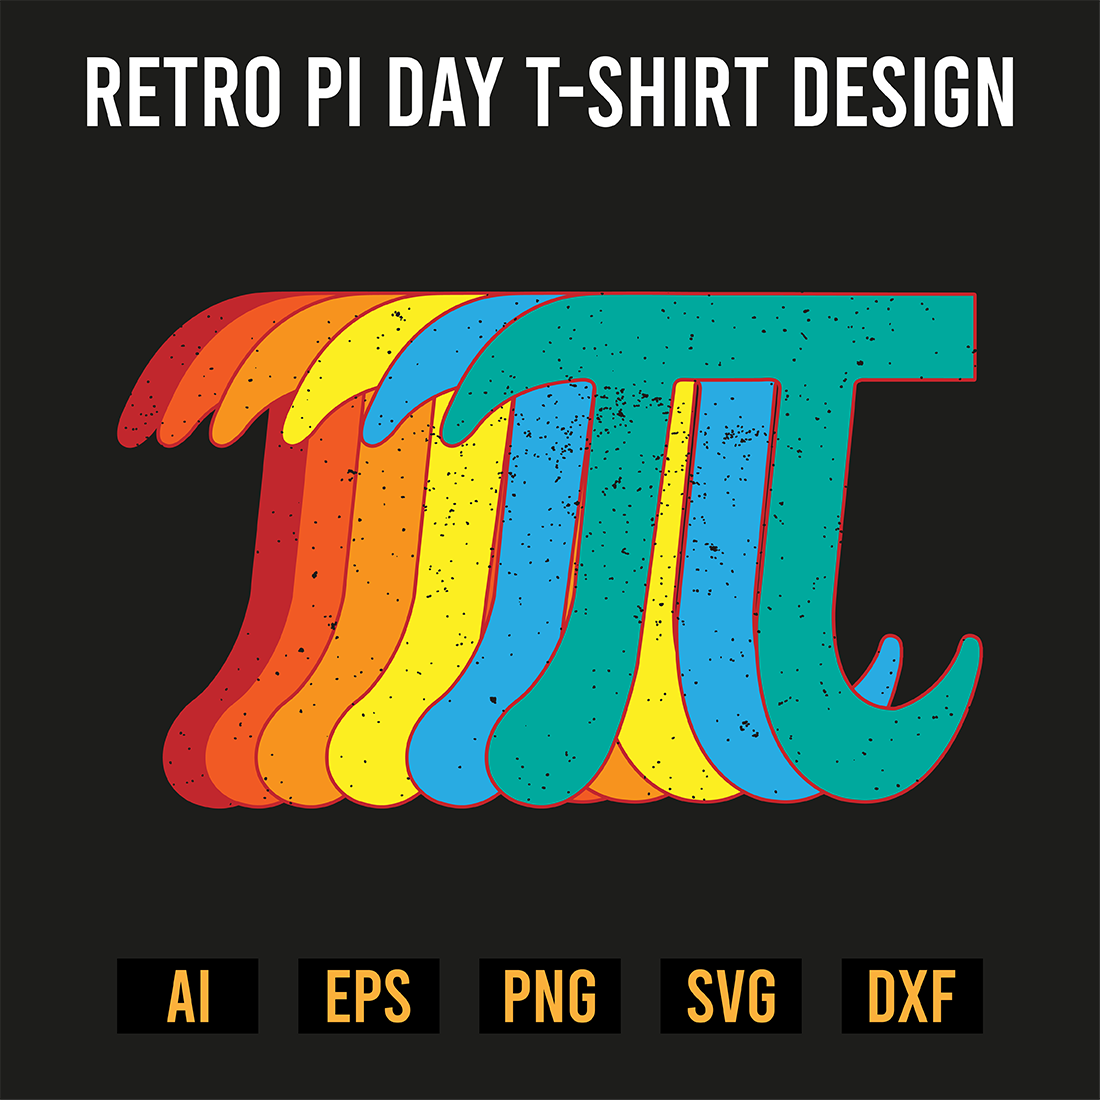 Retro Pi Day T-Shirt Design preview image.